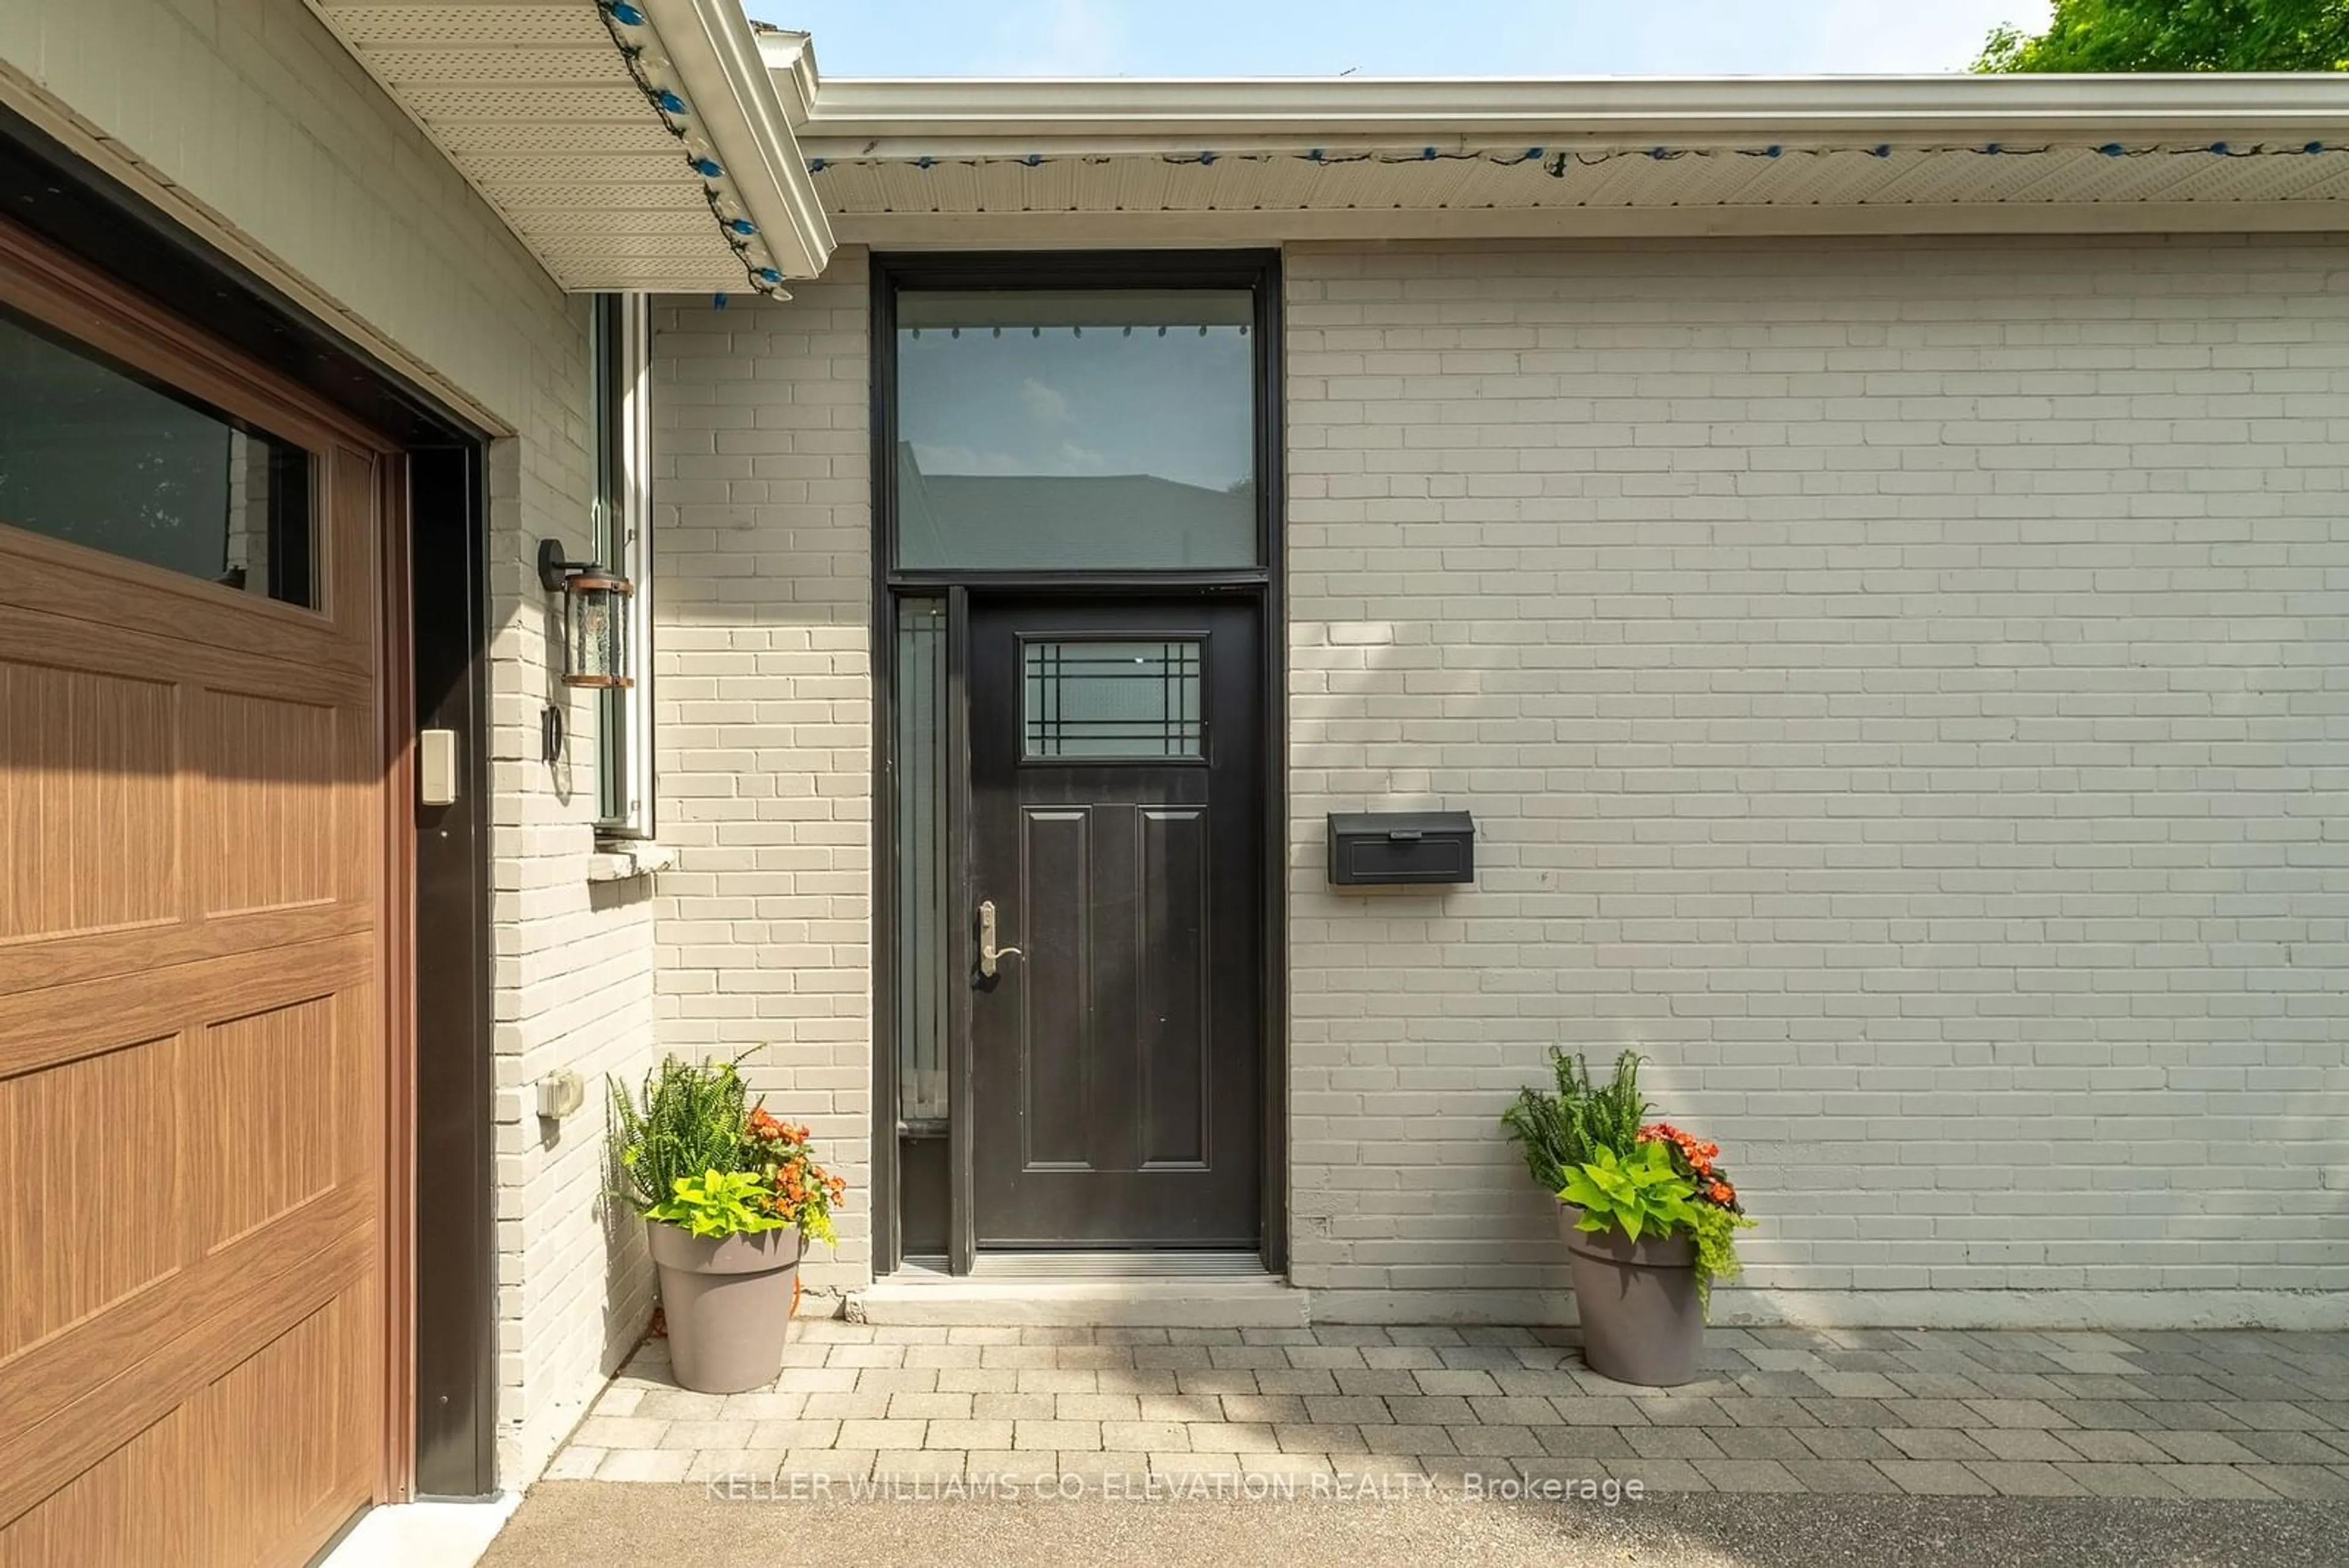 Home with brick exterior material for 10 Aikenhead Rd, Toronto Ontario M9R 2Z2